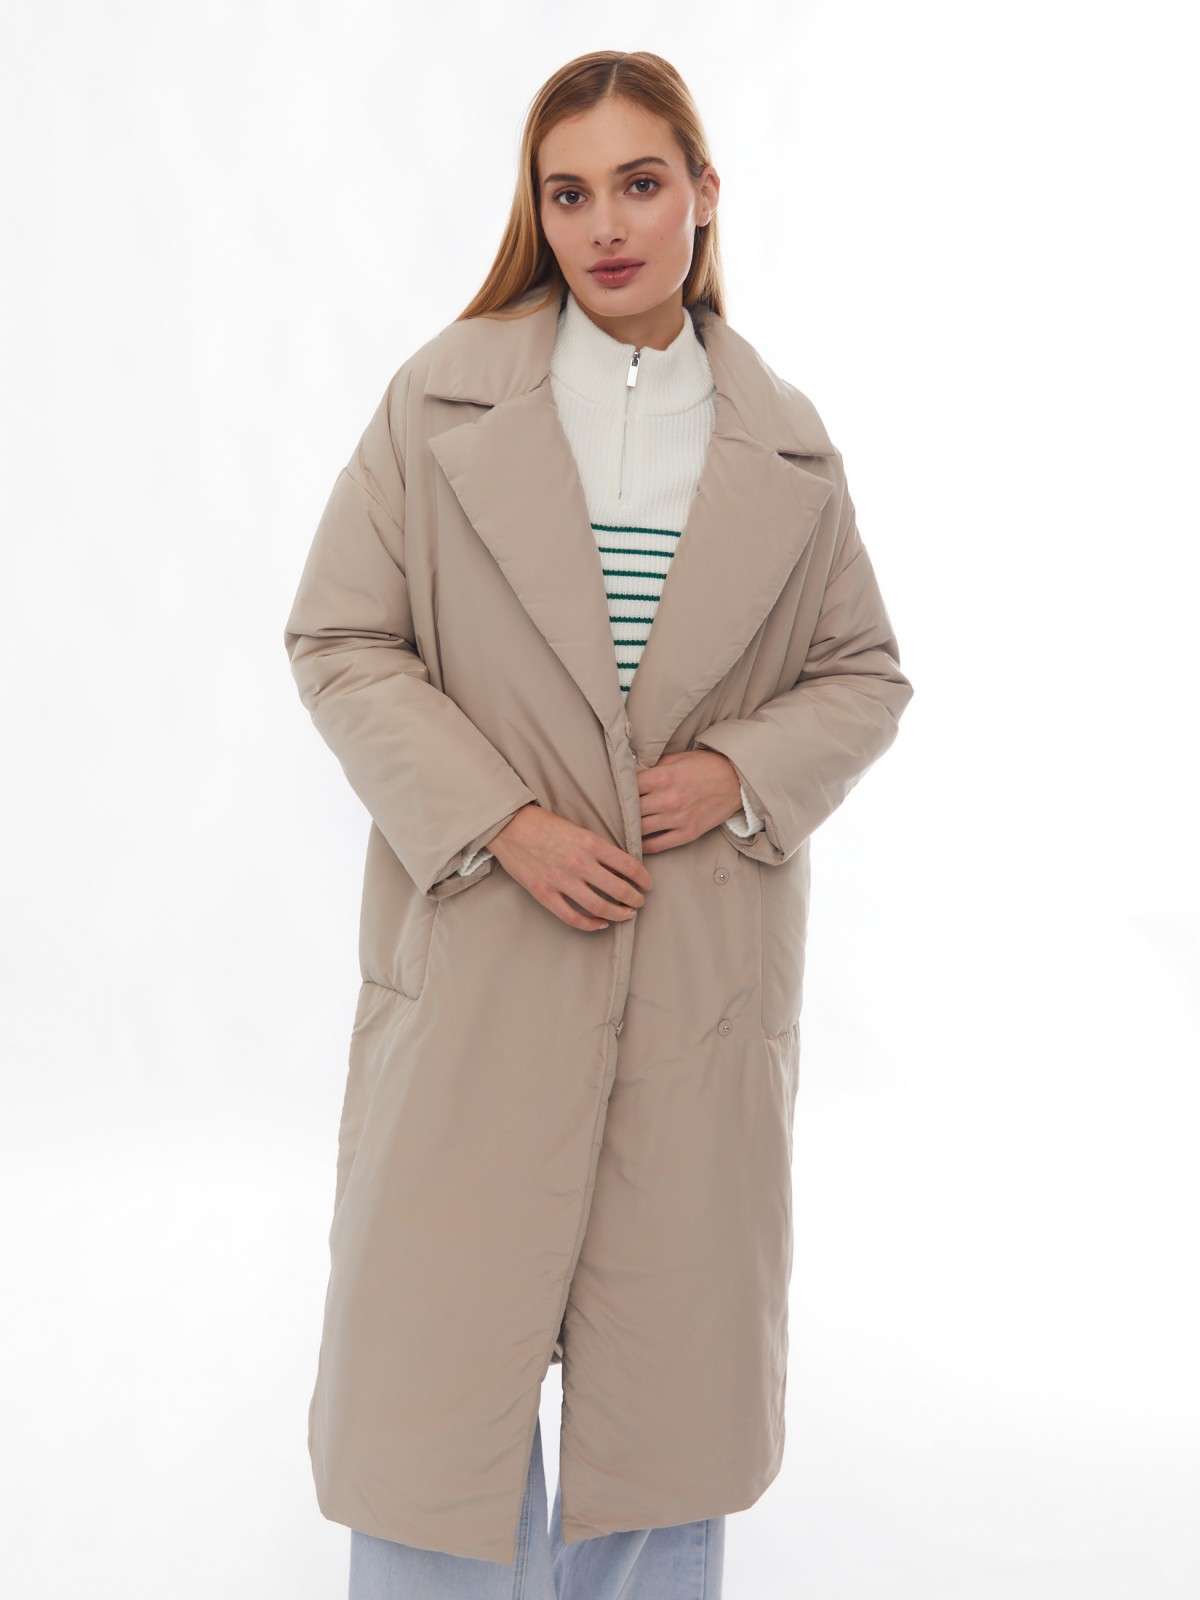 Утеплённое пальто с отложным воротником и поясом zolla 024125297134, цвет бежевый, размер XS